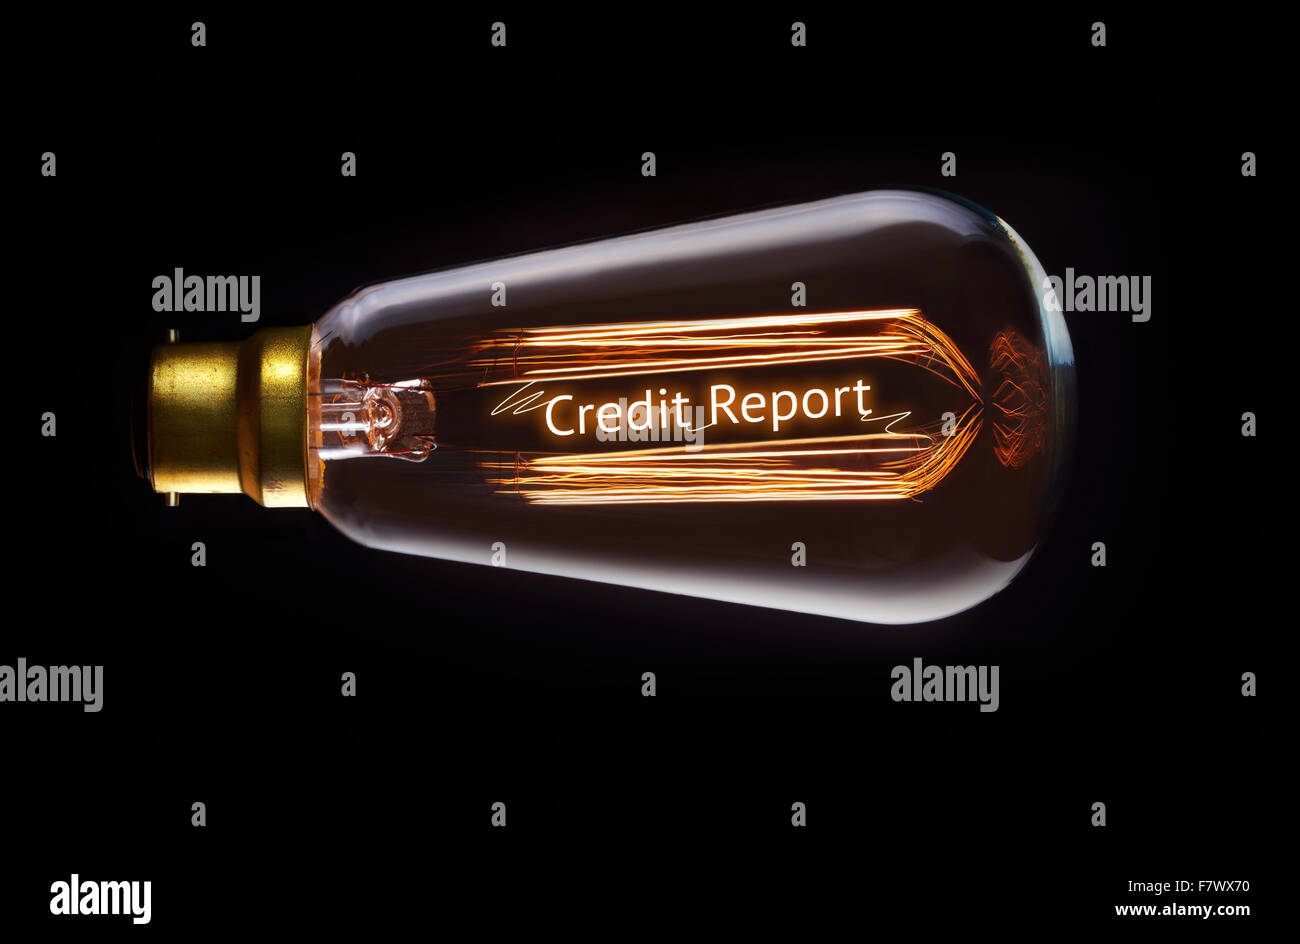 Credit Report concept dans une ampoule à incandescence. Banque D'Images